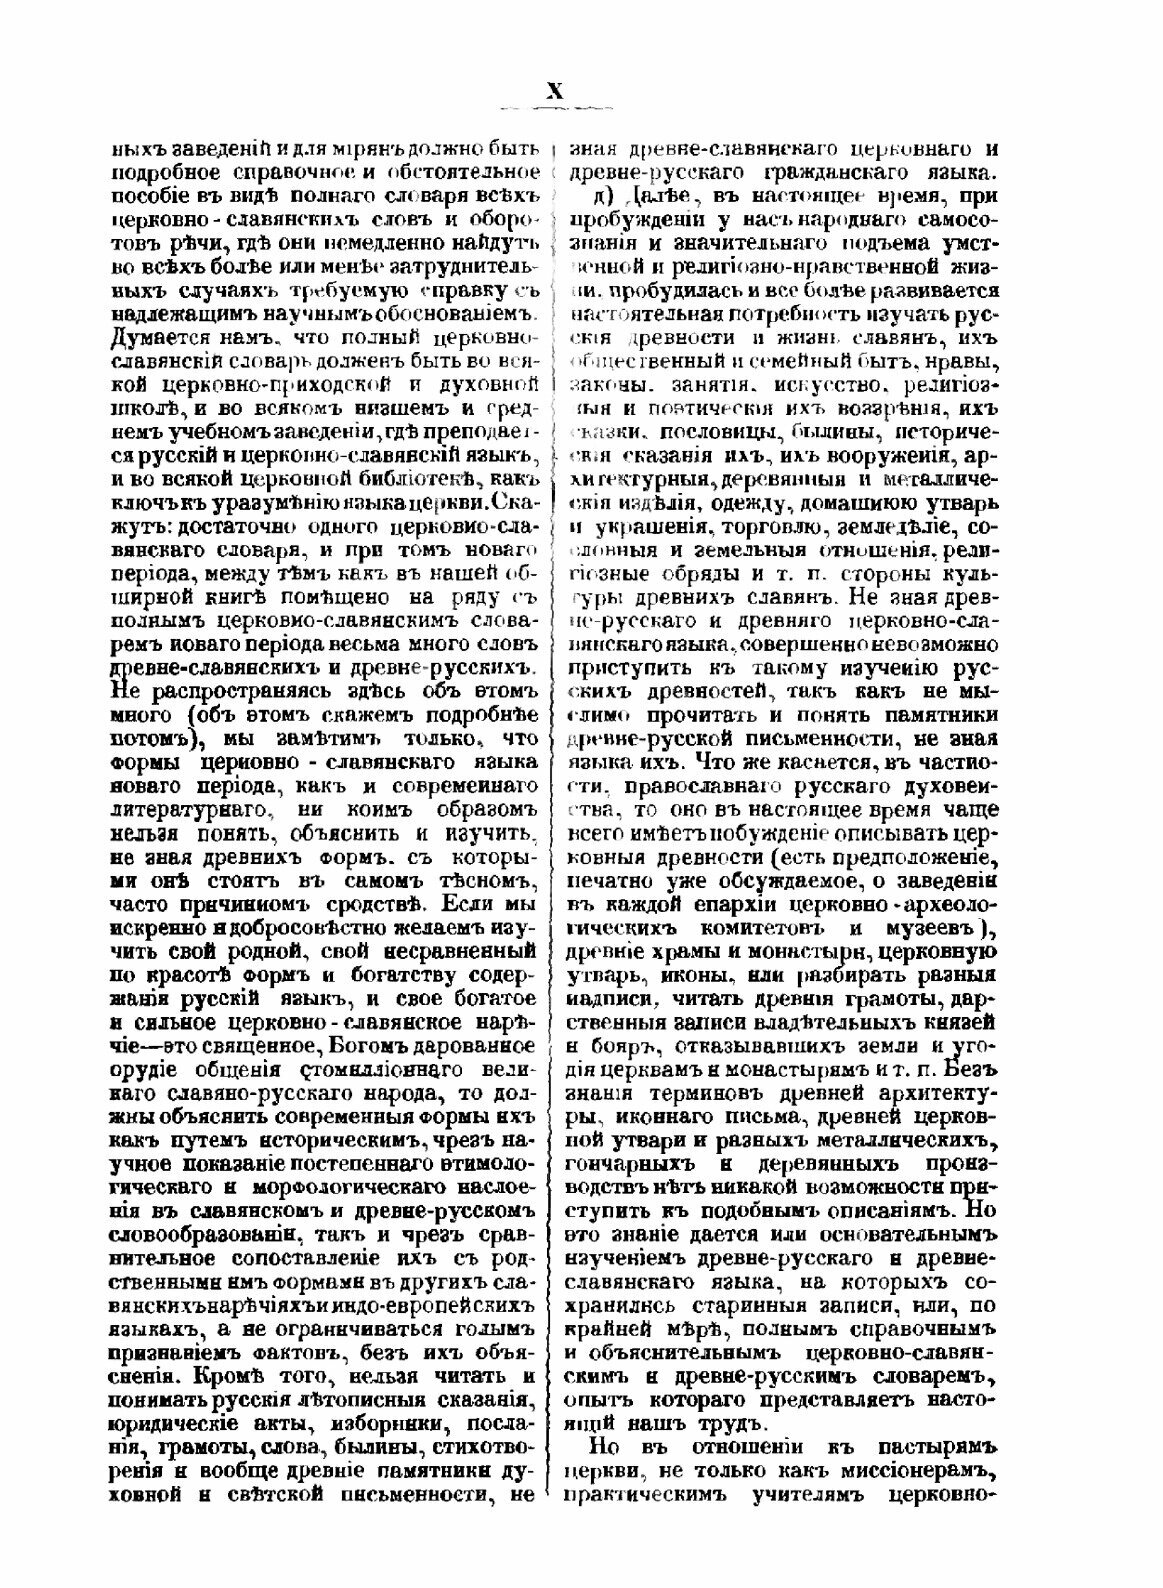 Полный церковнославянский словарь - фото №7